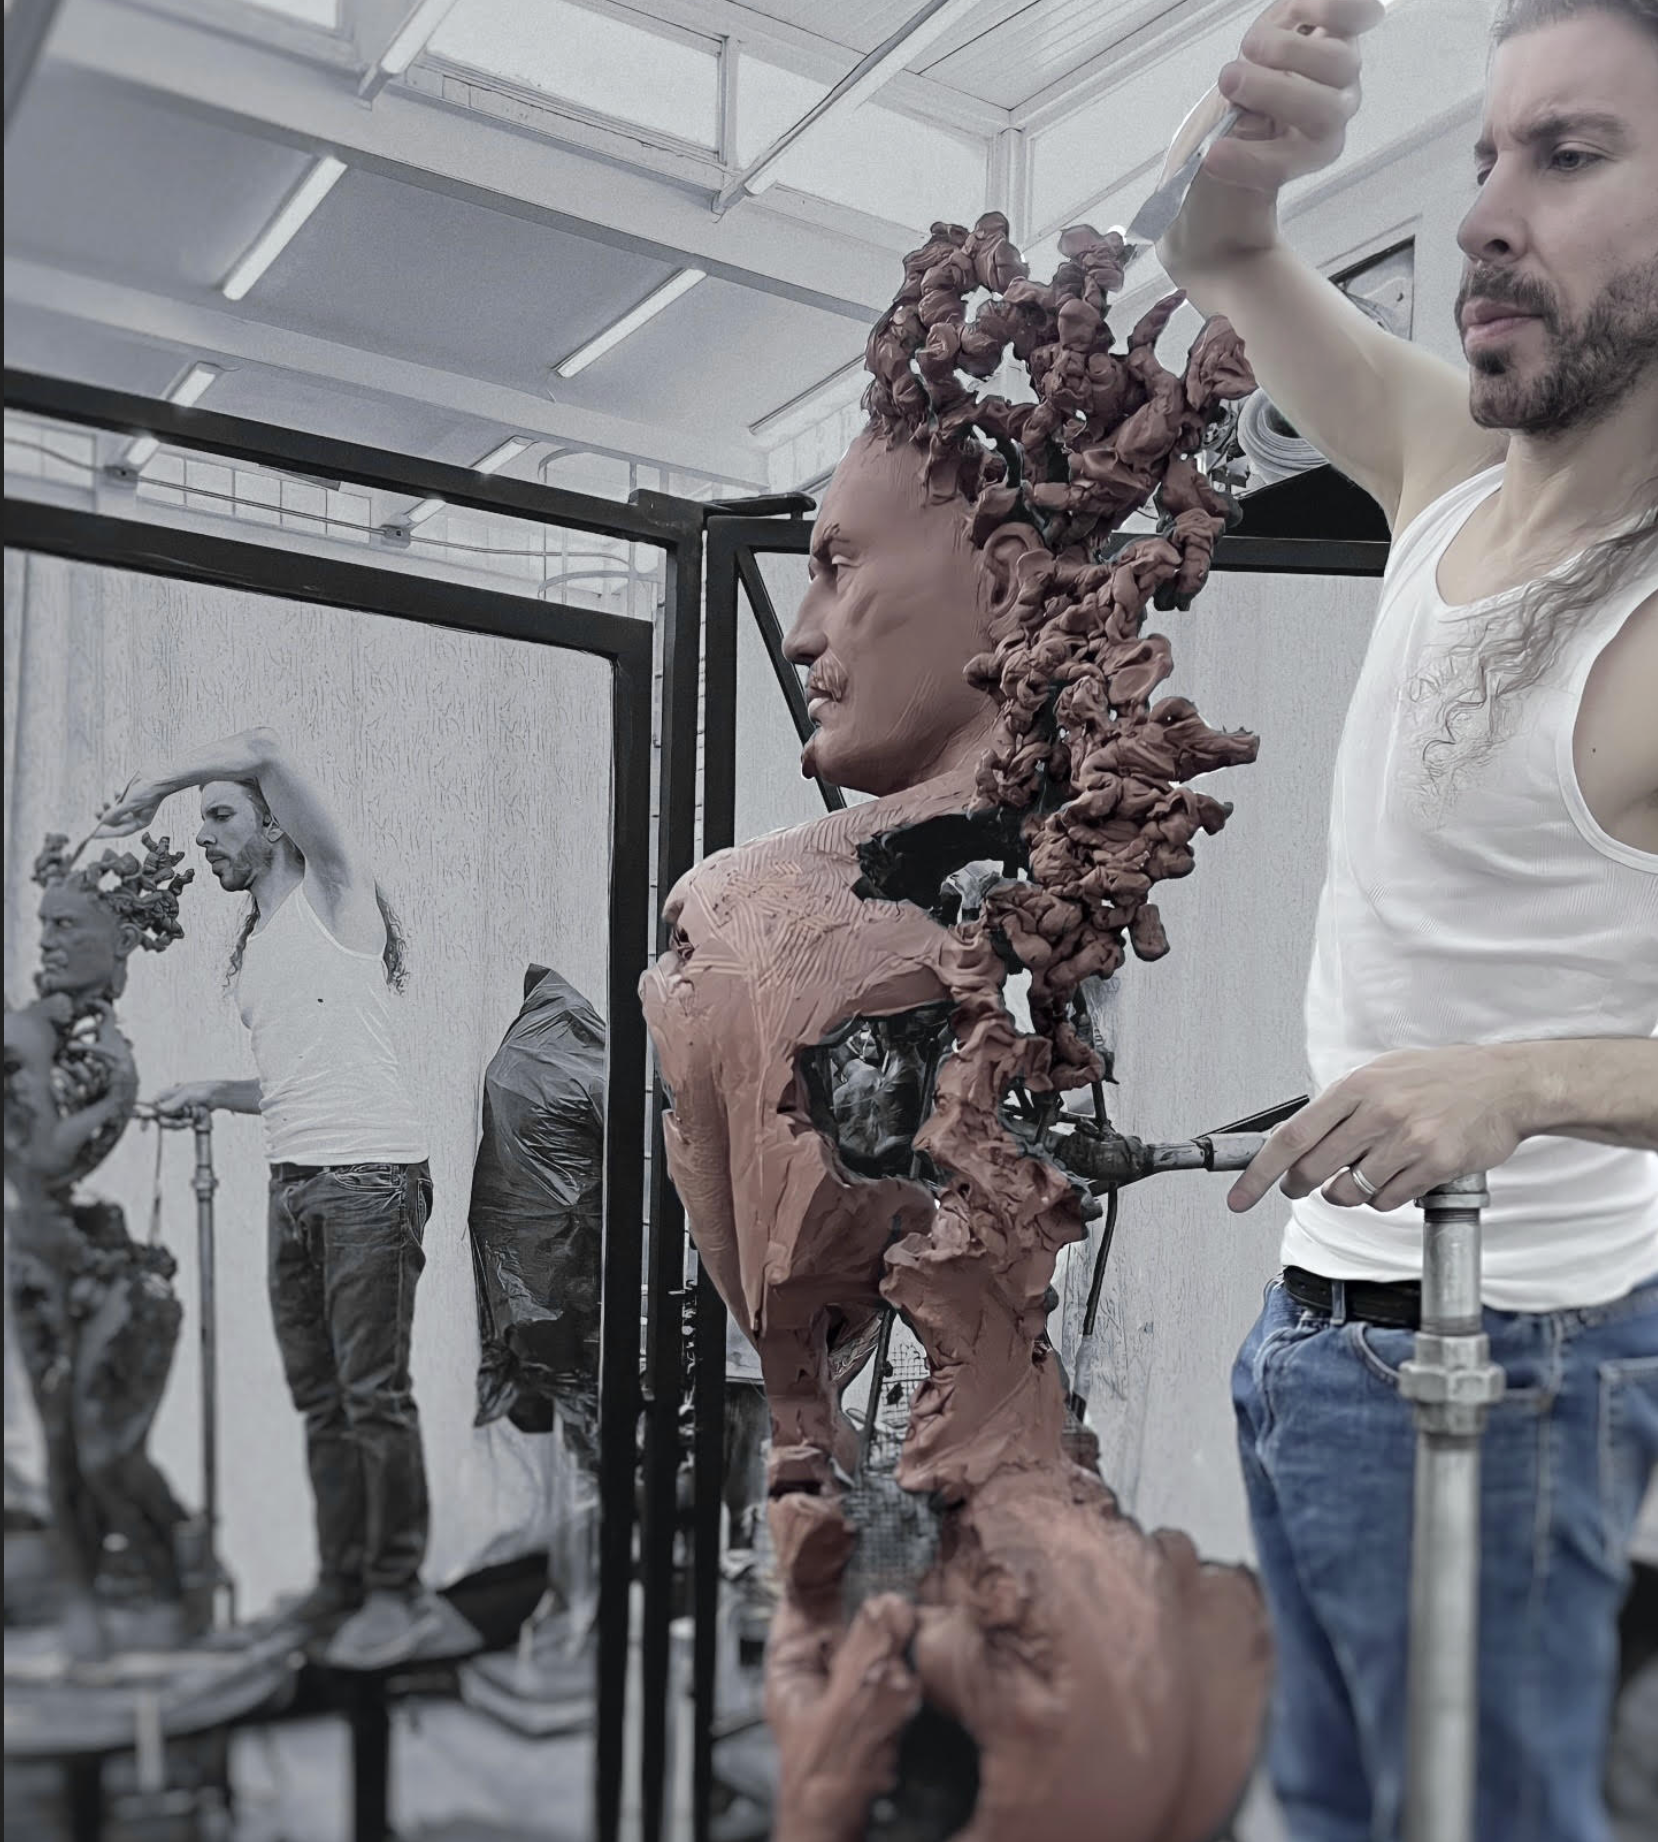 El escultor Walter Marin, que ofrece su muestra "Territorio de metáforas" durante Miami Art Week, trabaja en México.